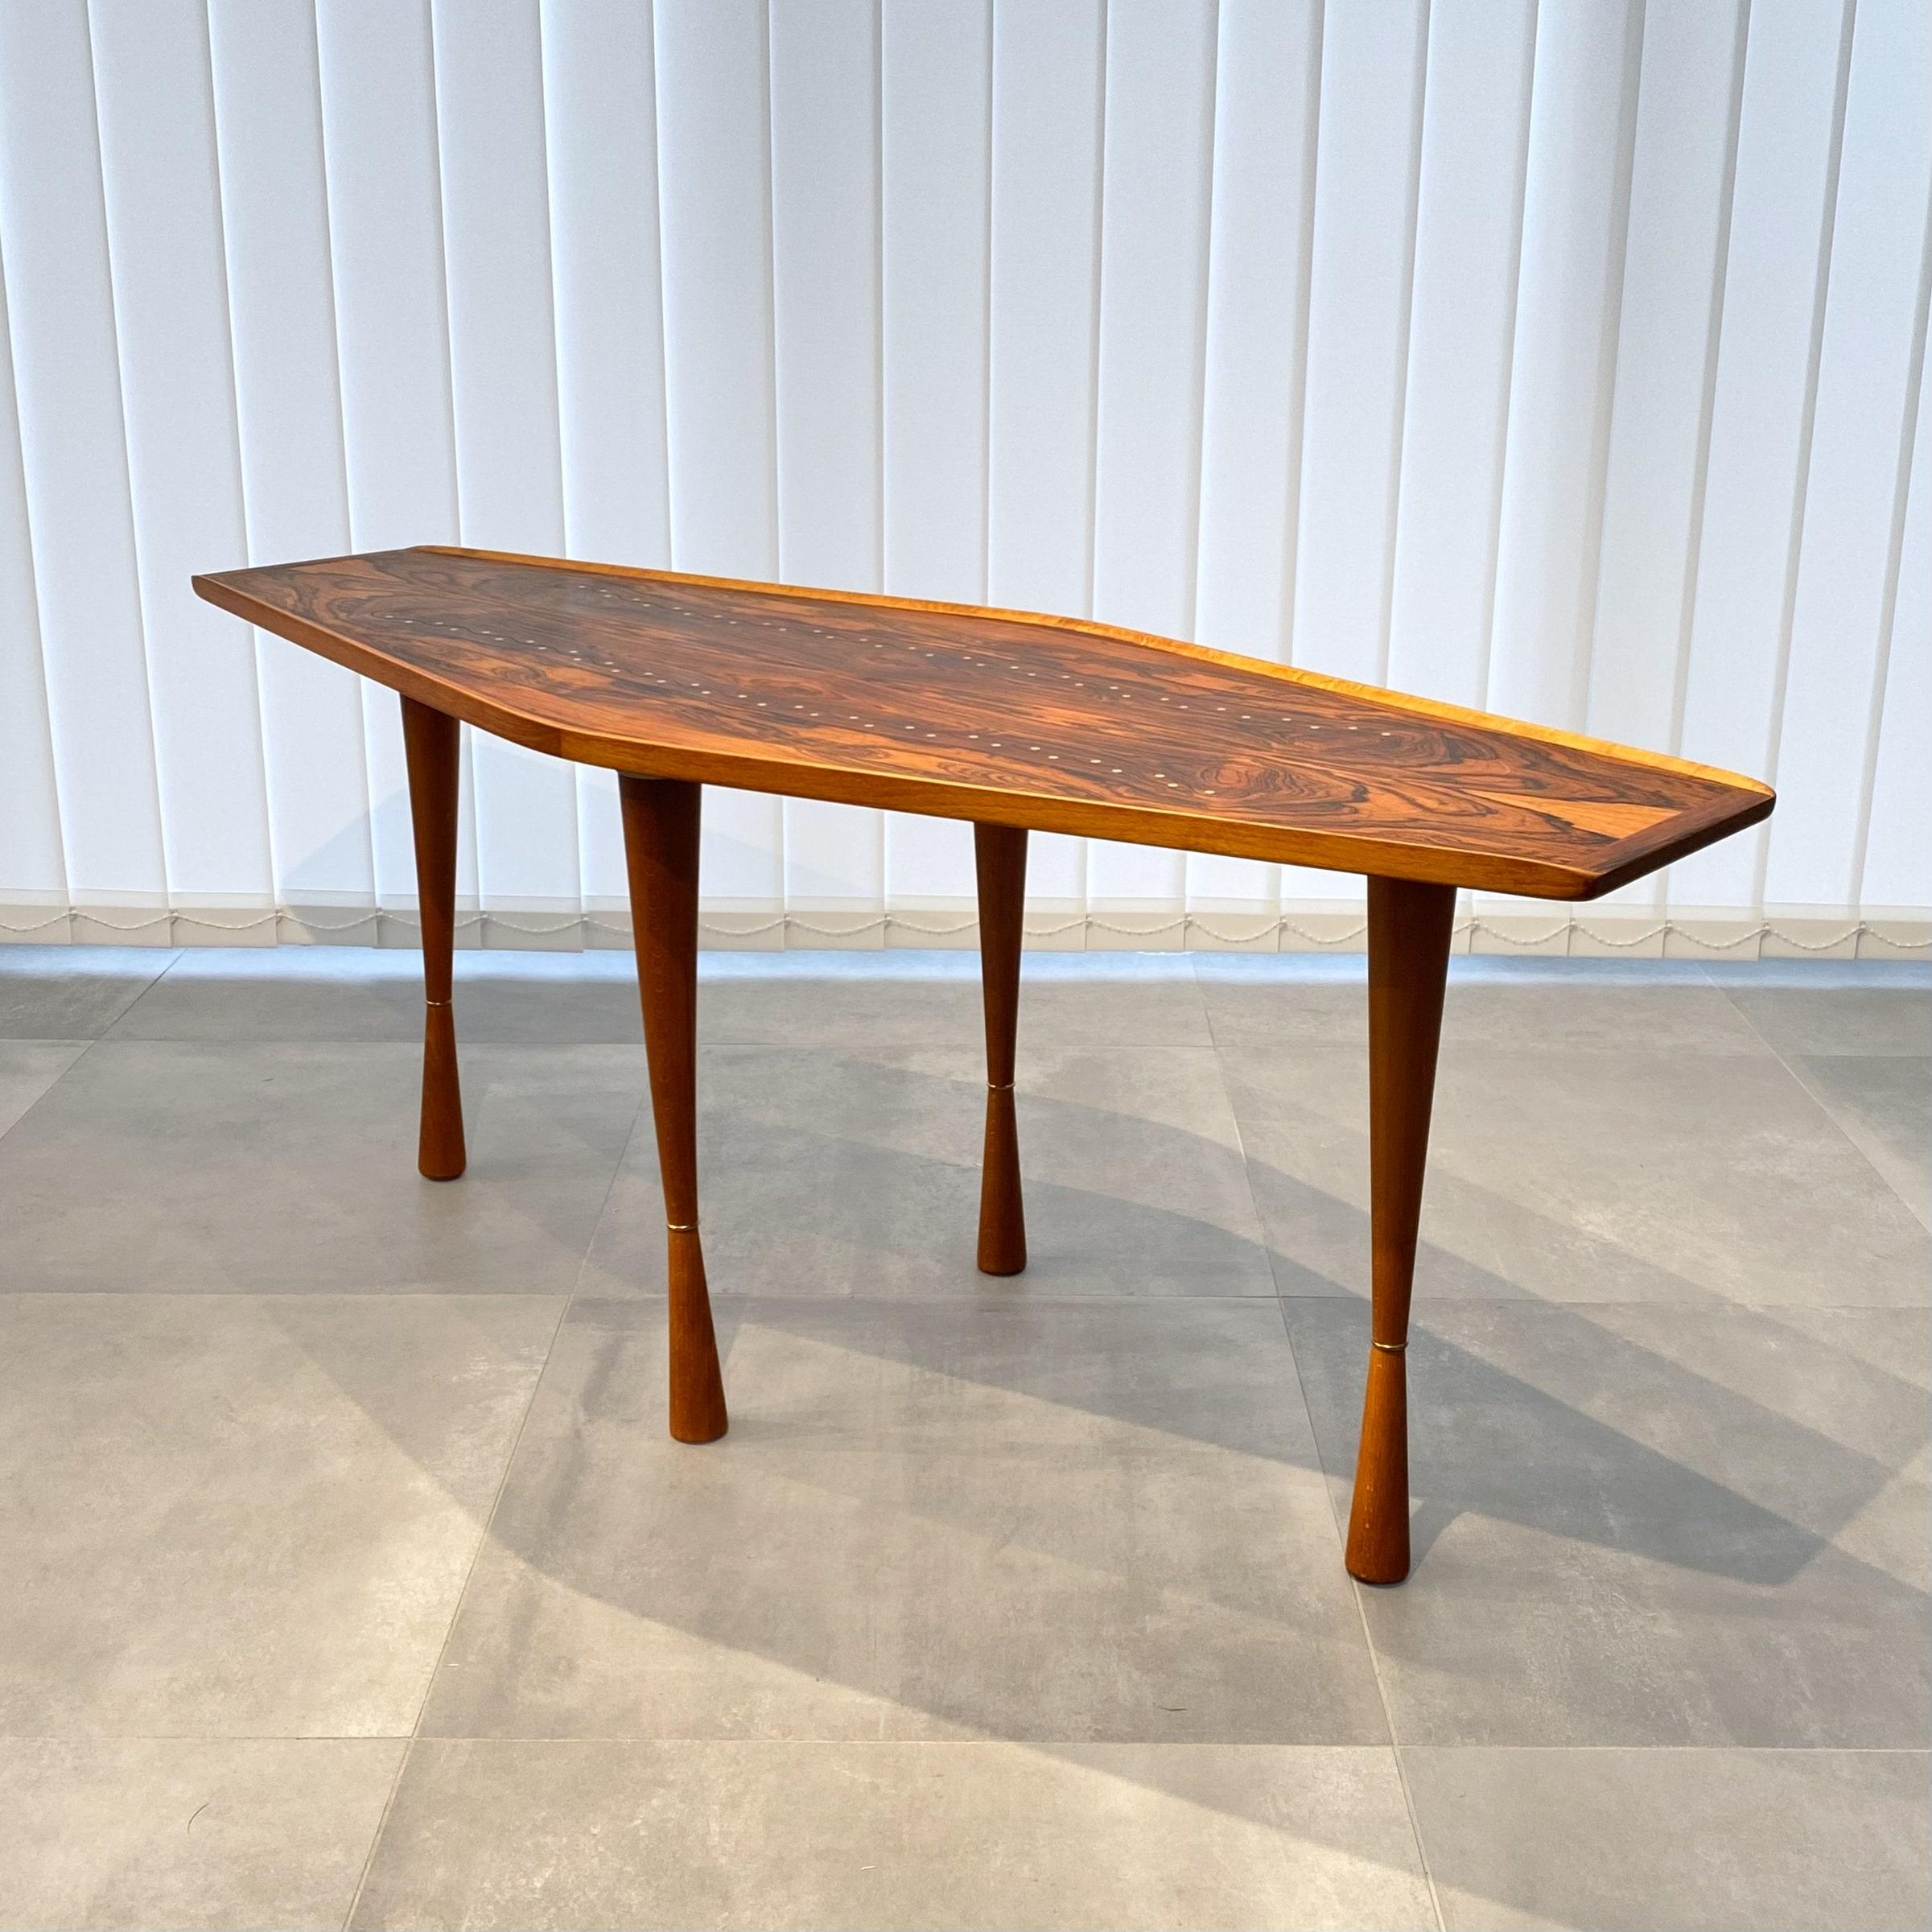 Table basse suédoise moderniste des années 1940 constituée d'un plateau hexagonal aux bords renversés reposant sur quatre pieds en forme de sablier décorés d'anneaux en laiton. Le plateau de la table est orné d'incrustations en laiton, qui